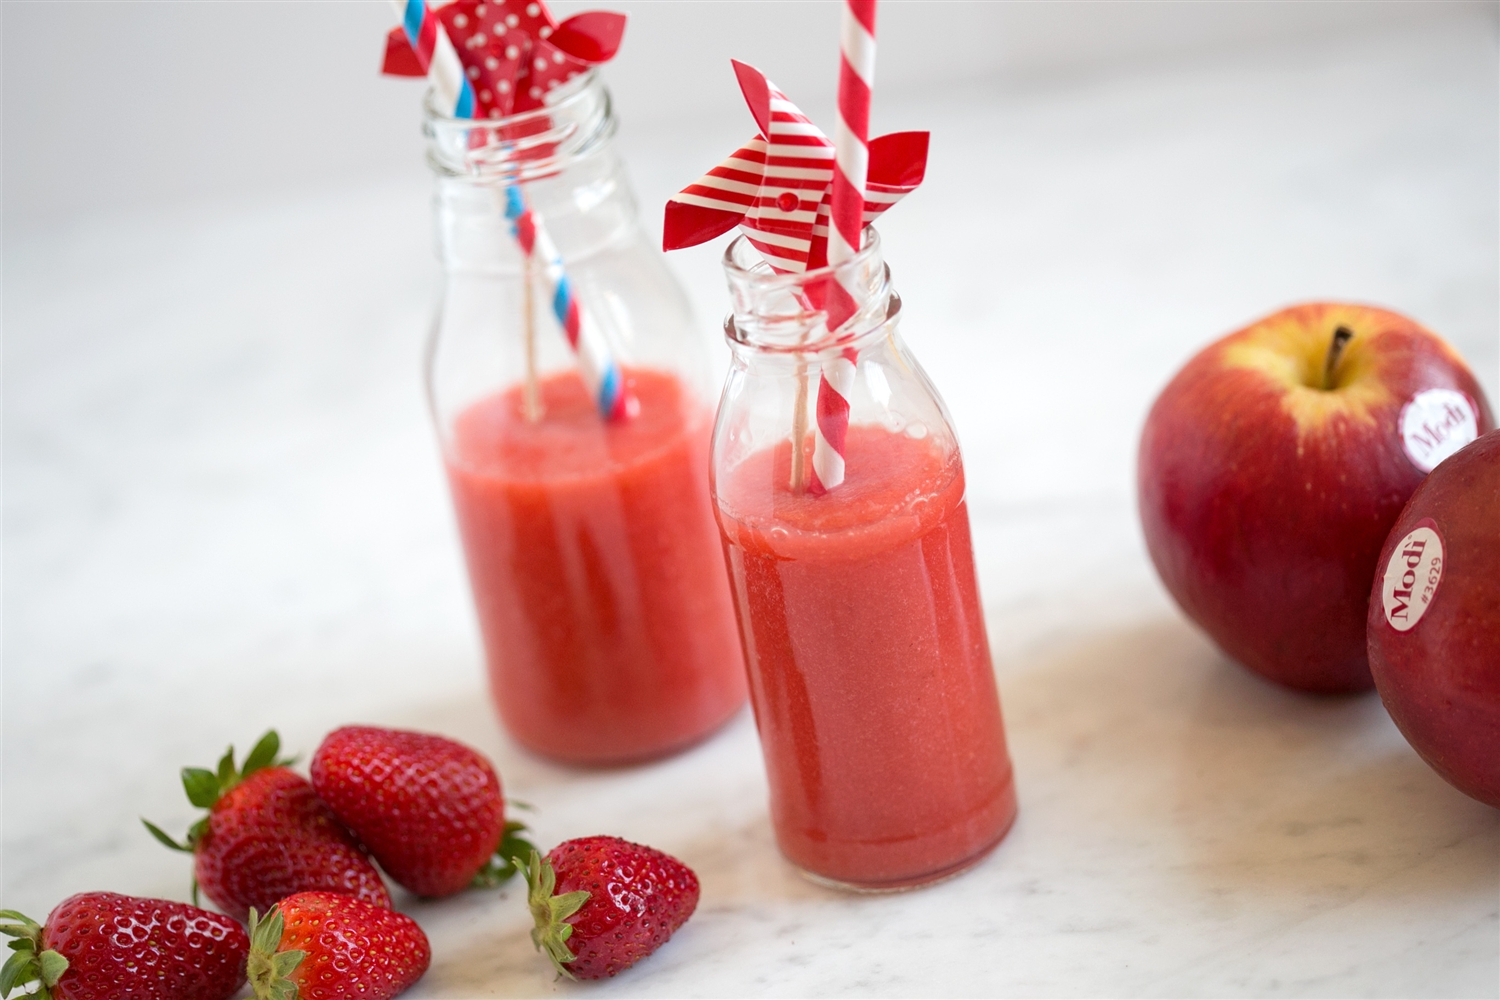 Modi Apfel, Erdbeer und Karotten Smoothie | Modì® Apple